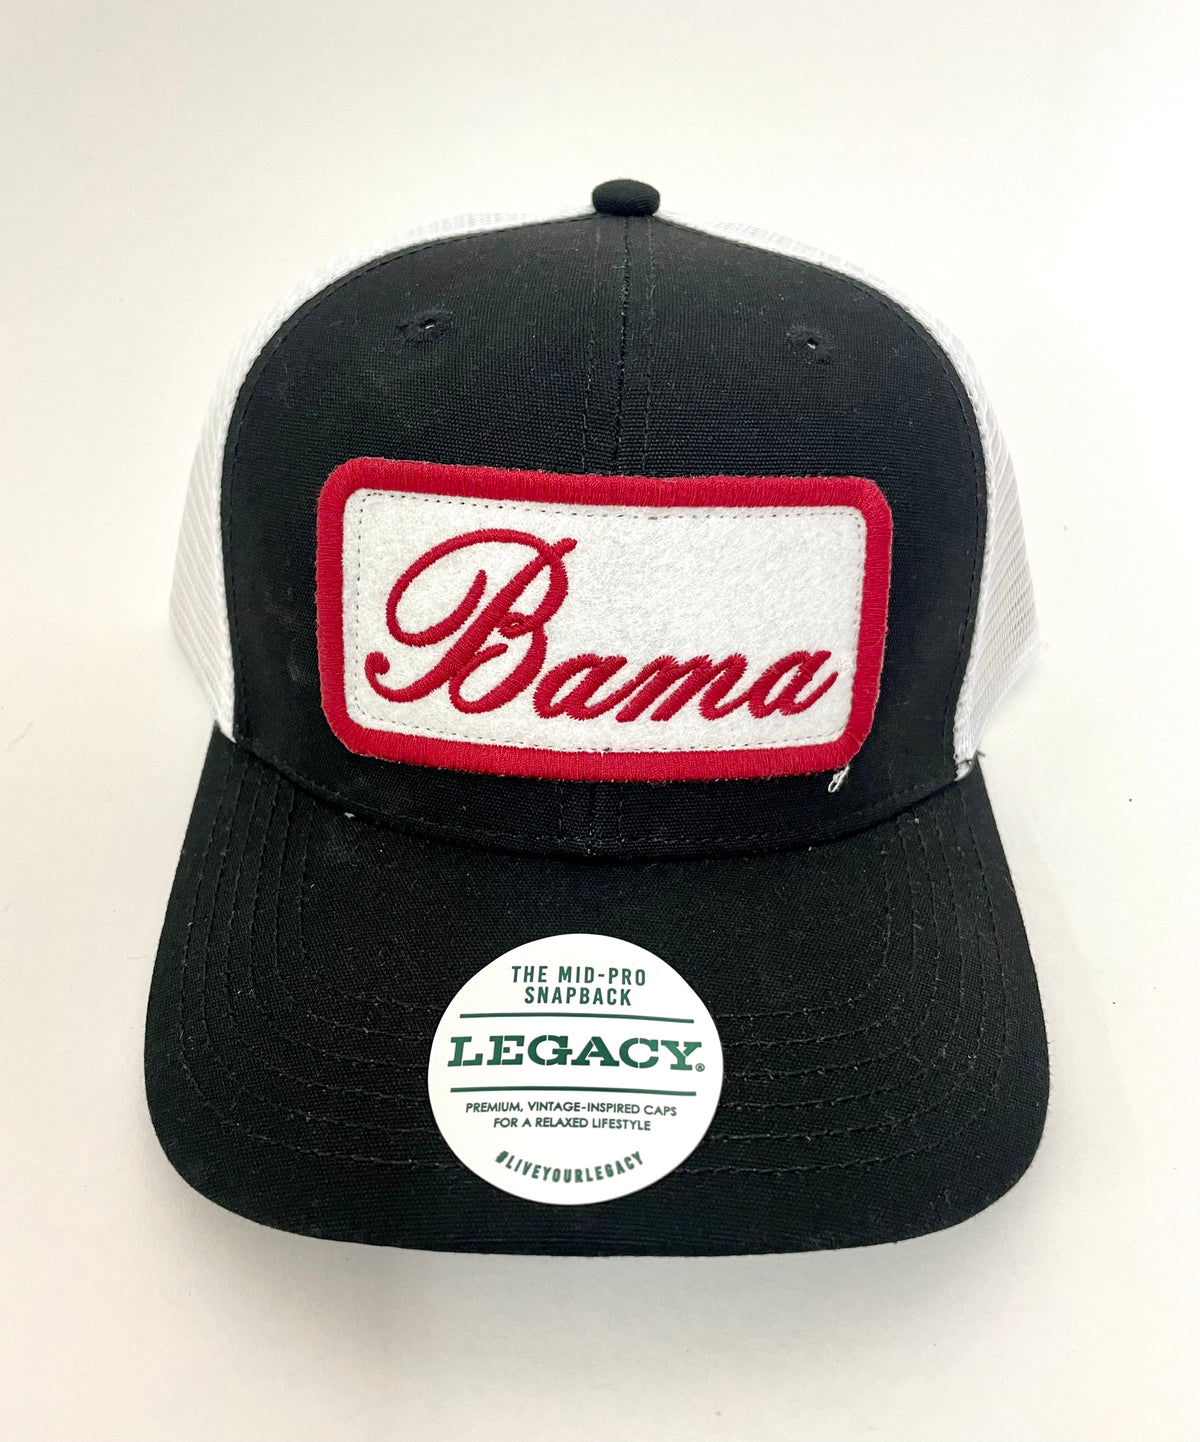 Legacy New Bama Script Trucker Hat